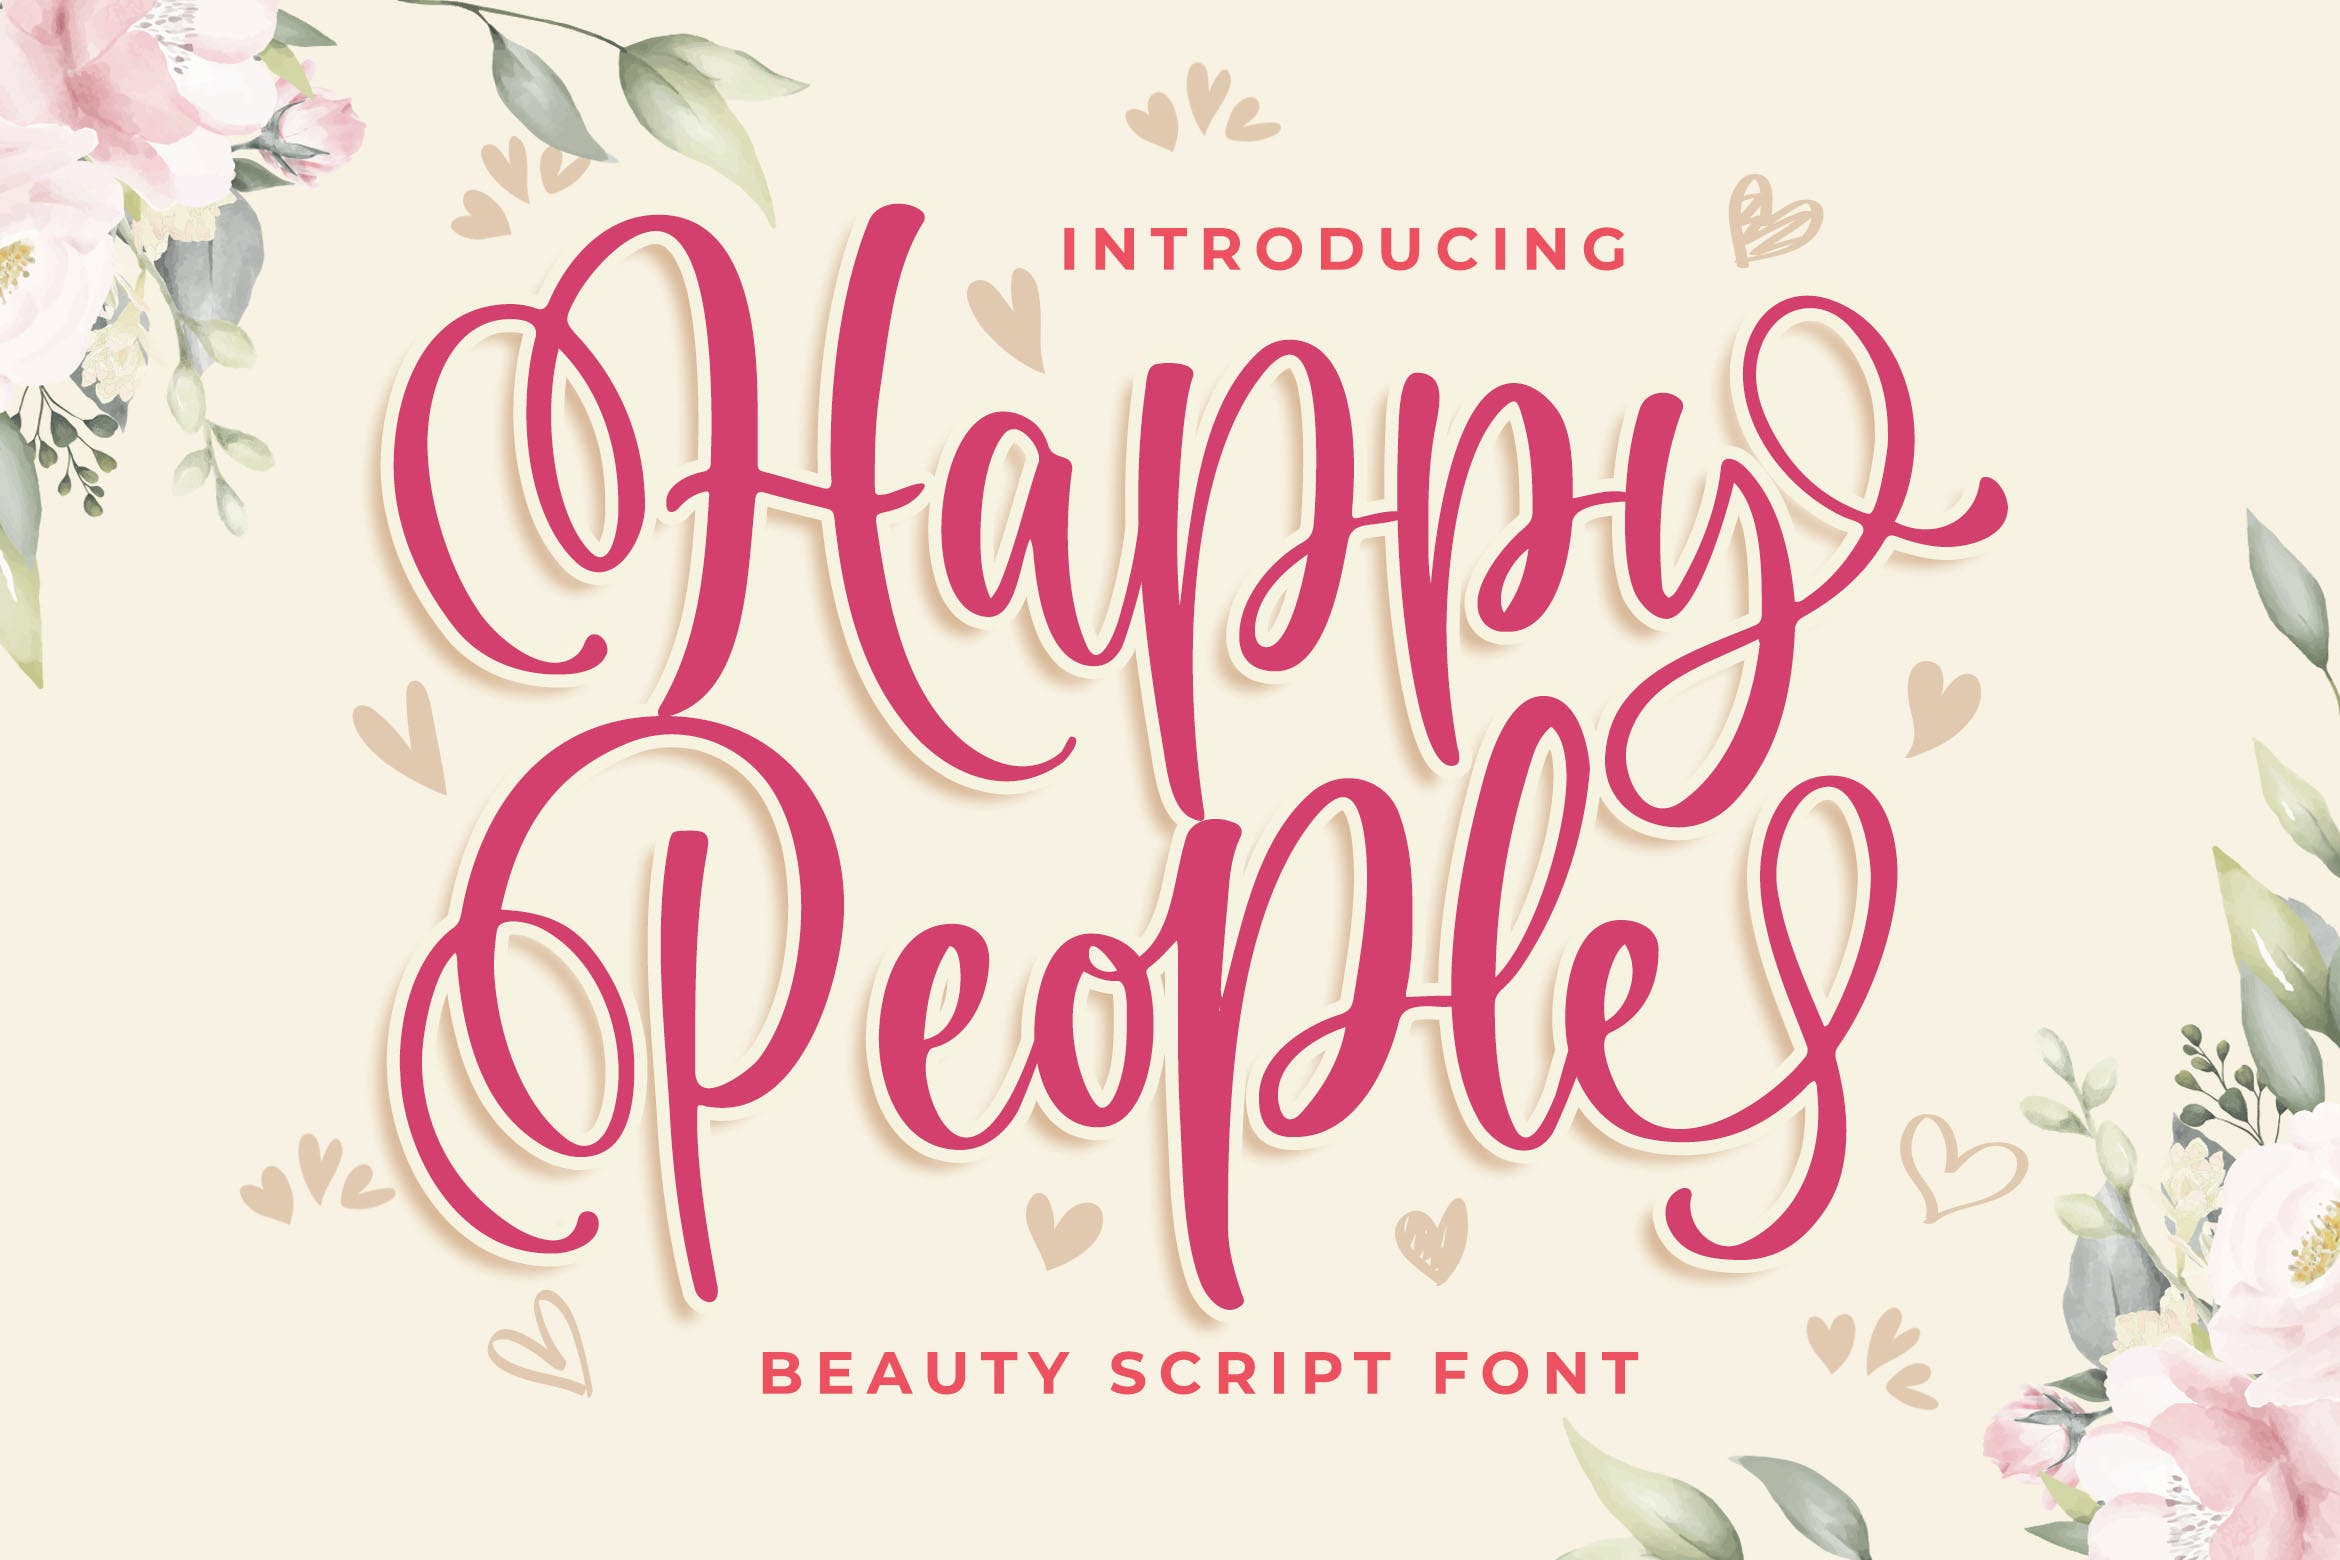 有趣现代书法风格英文字体合集 Happy People Beauty Script Font 设计素材 第1张